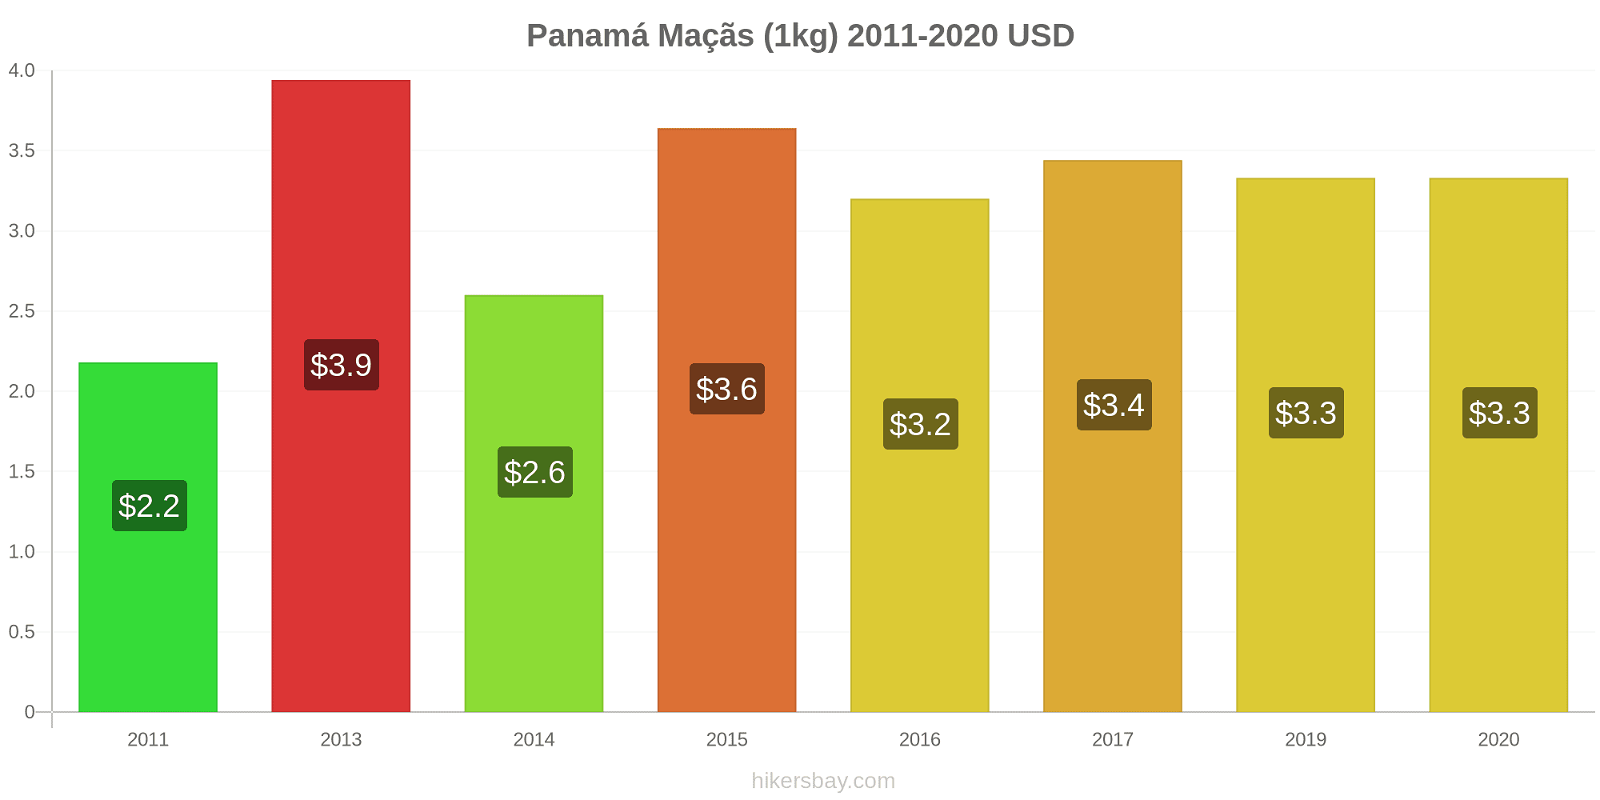 Panamá variação de preço Maçãs (1kg) hikersbay.com